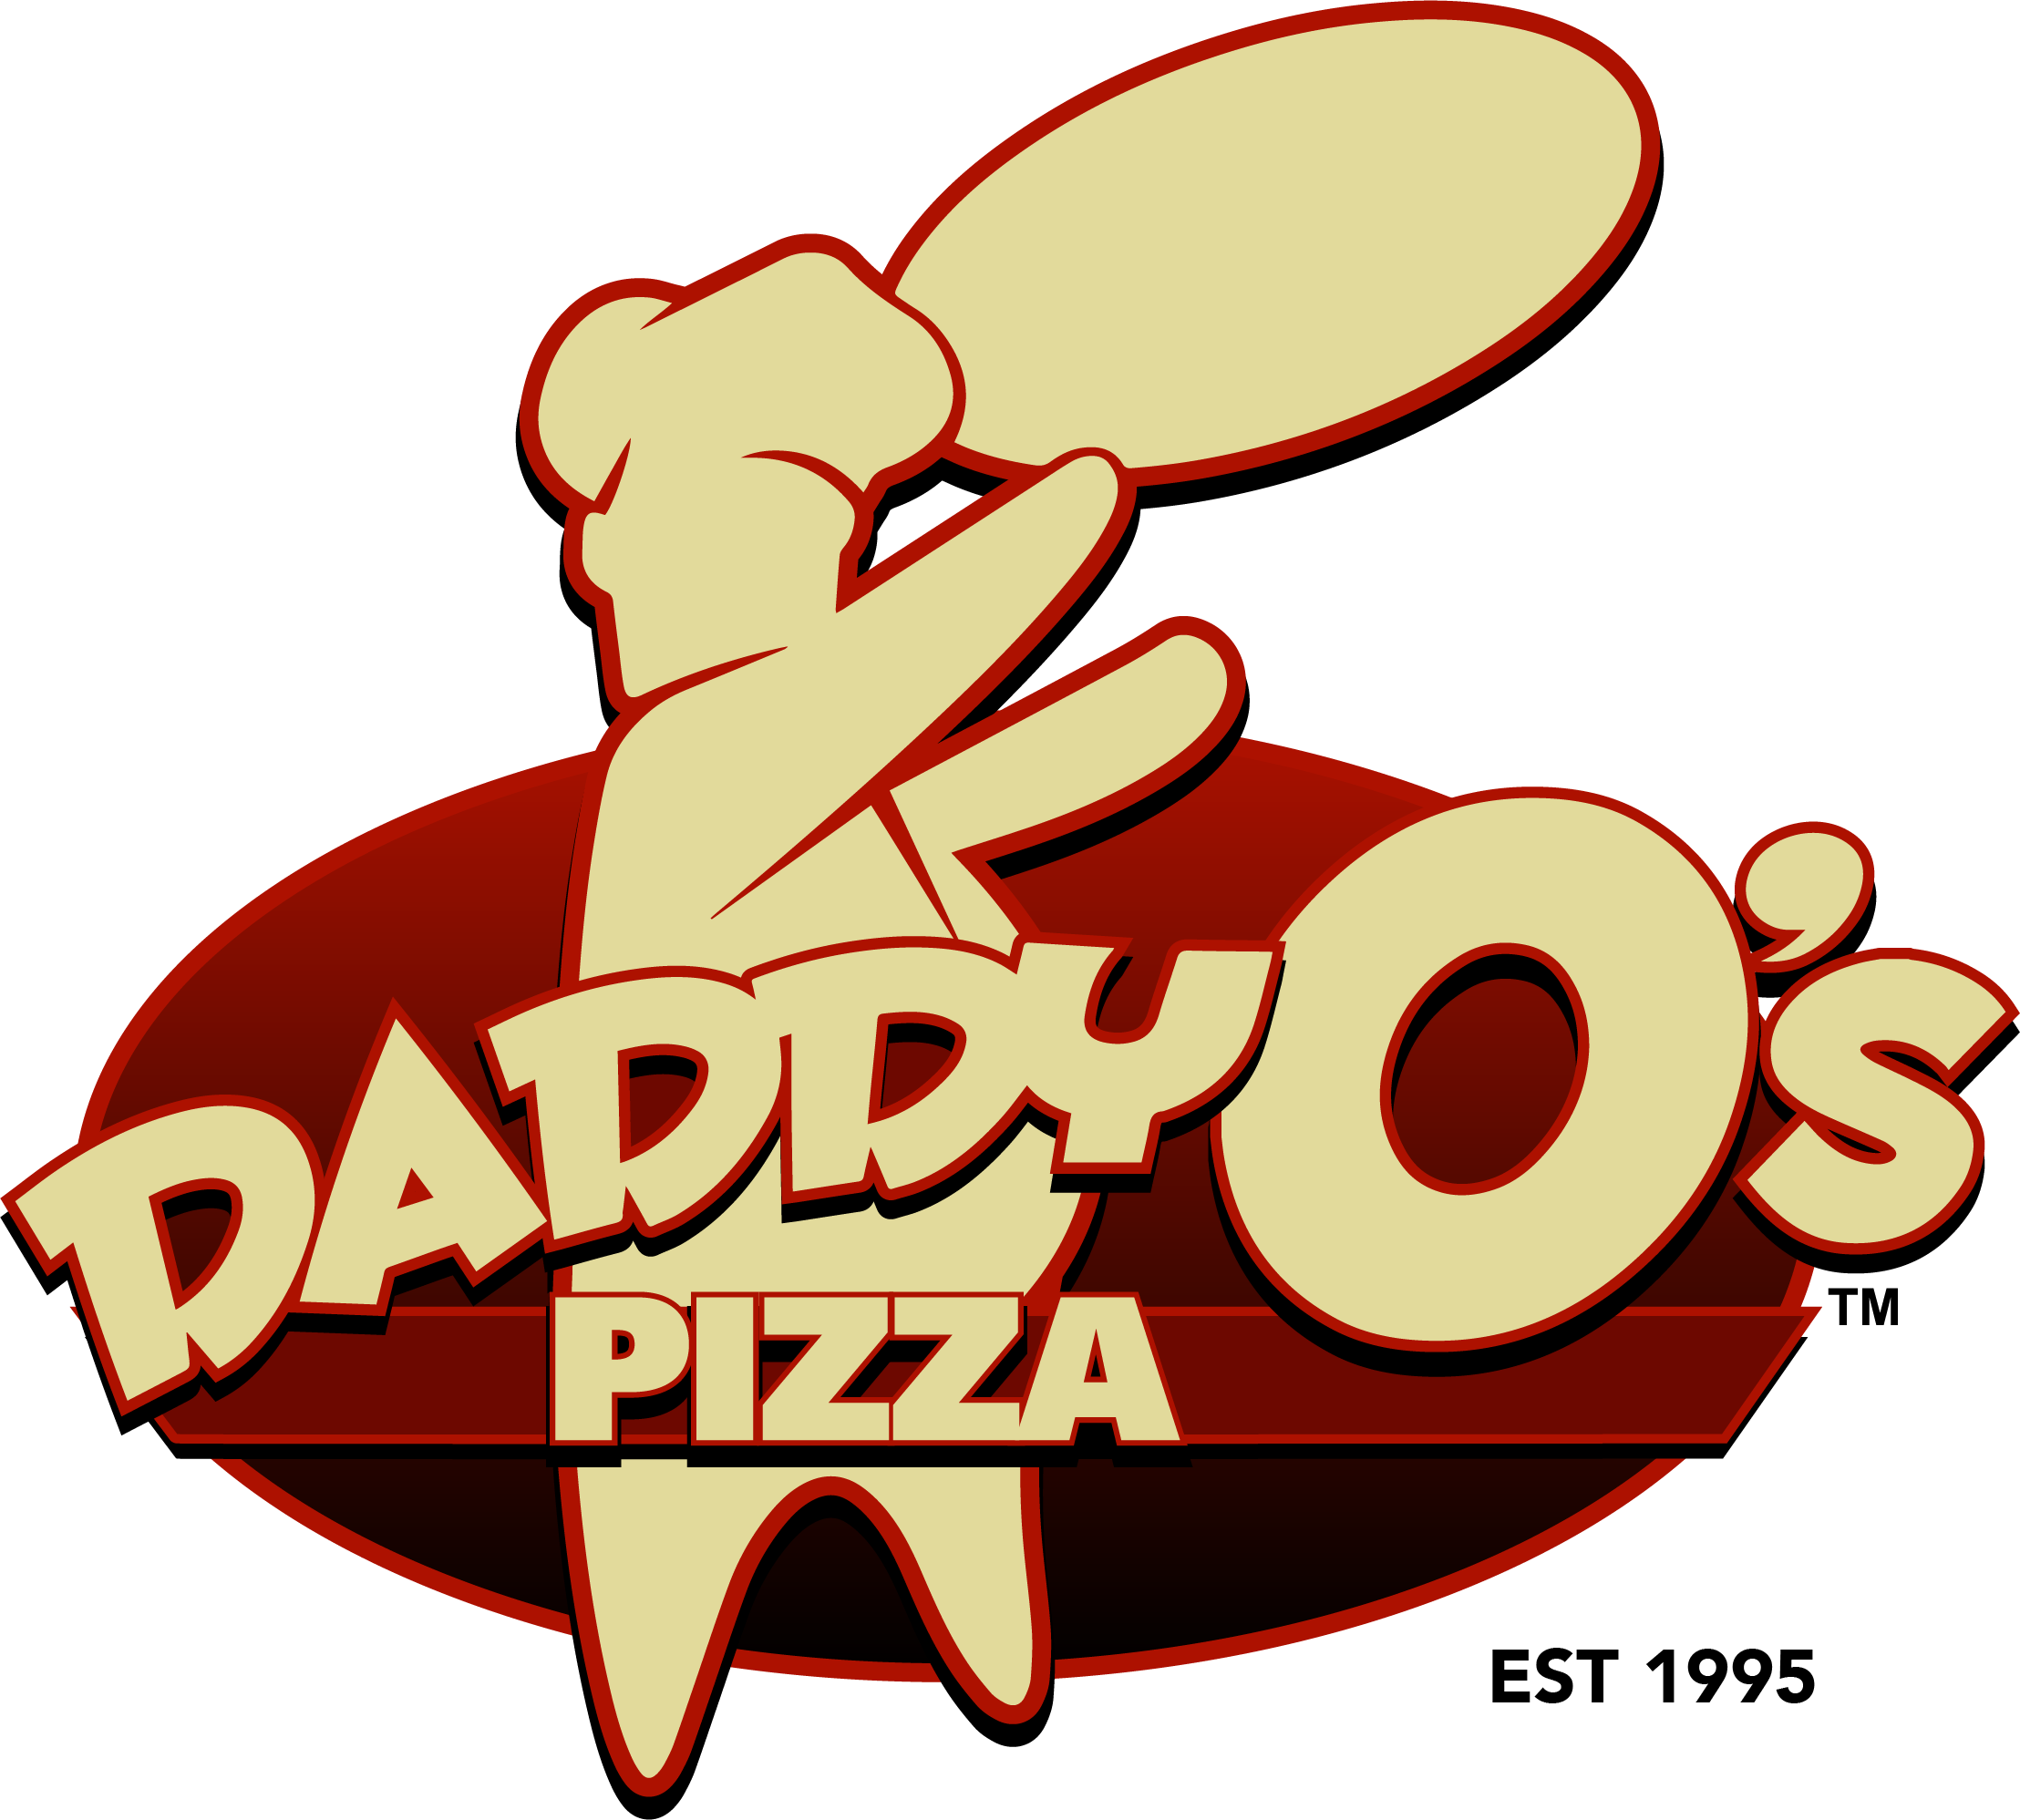 DaddyO's Pizza - Memorial logo